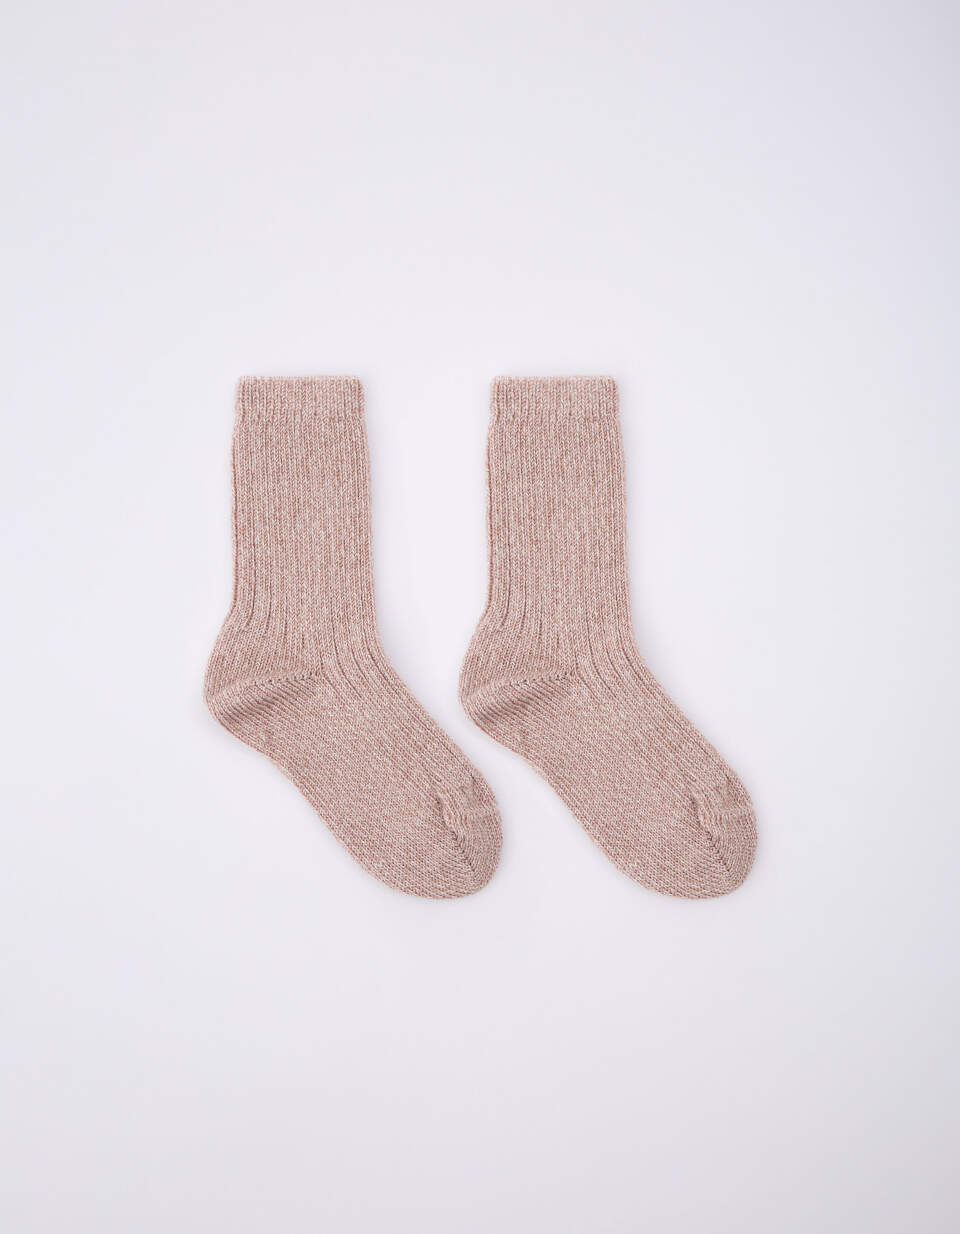 Вязаные носки шерстяные для девочек женские шерстяные носки вязаные носки носки башмак подарок 8 марта